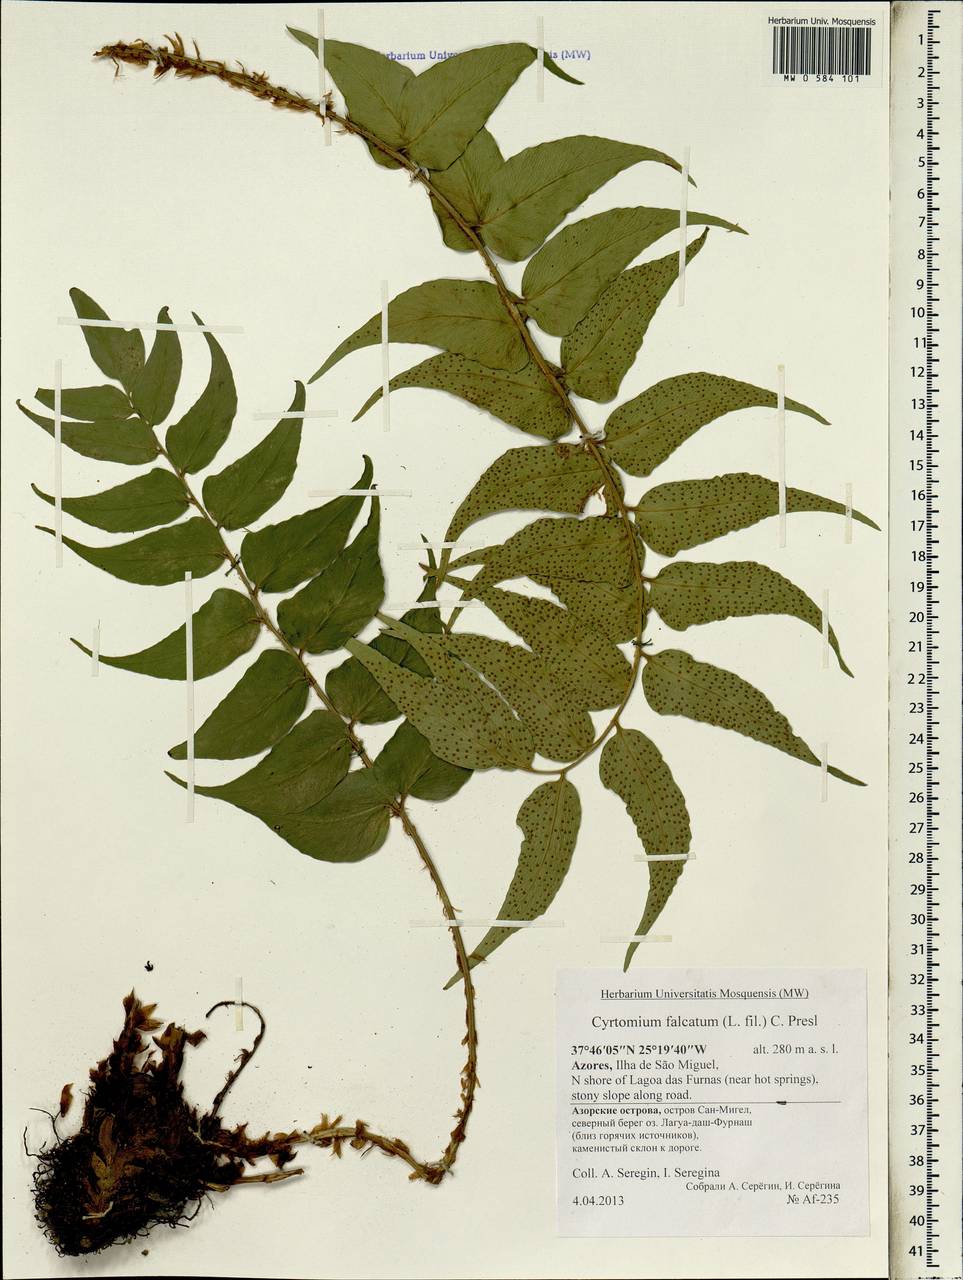 Cyrtomium falcatum (L. fil.) Presl, Africa (AFR) (Portugal)